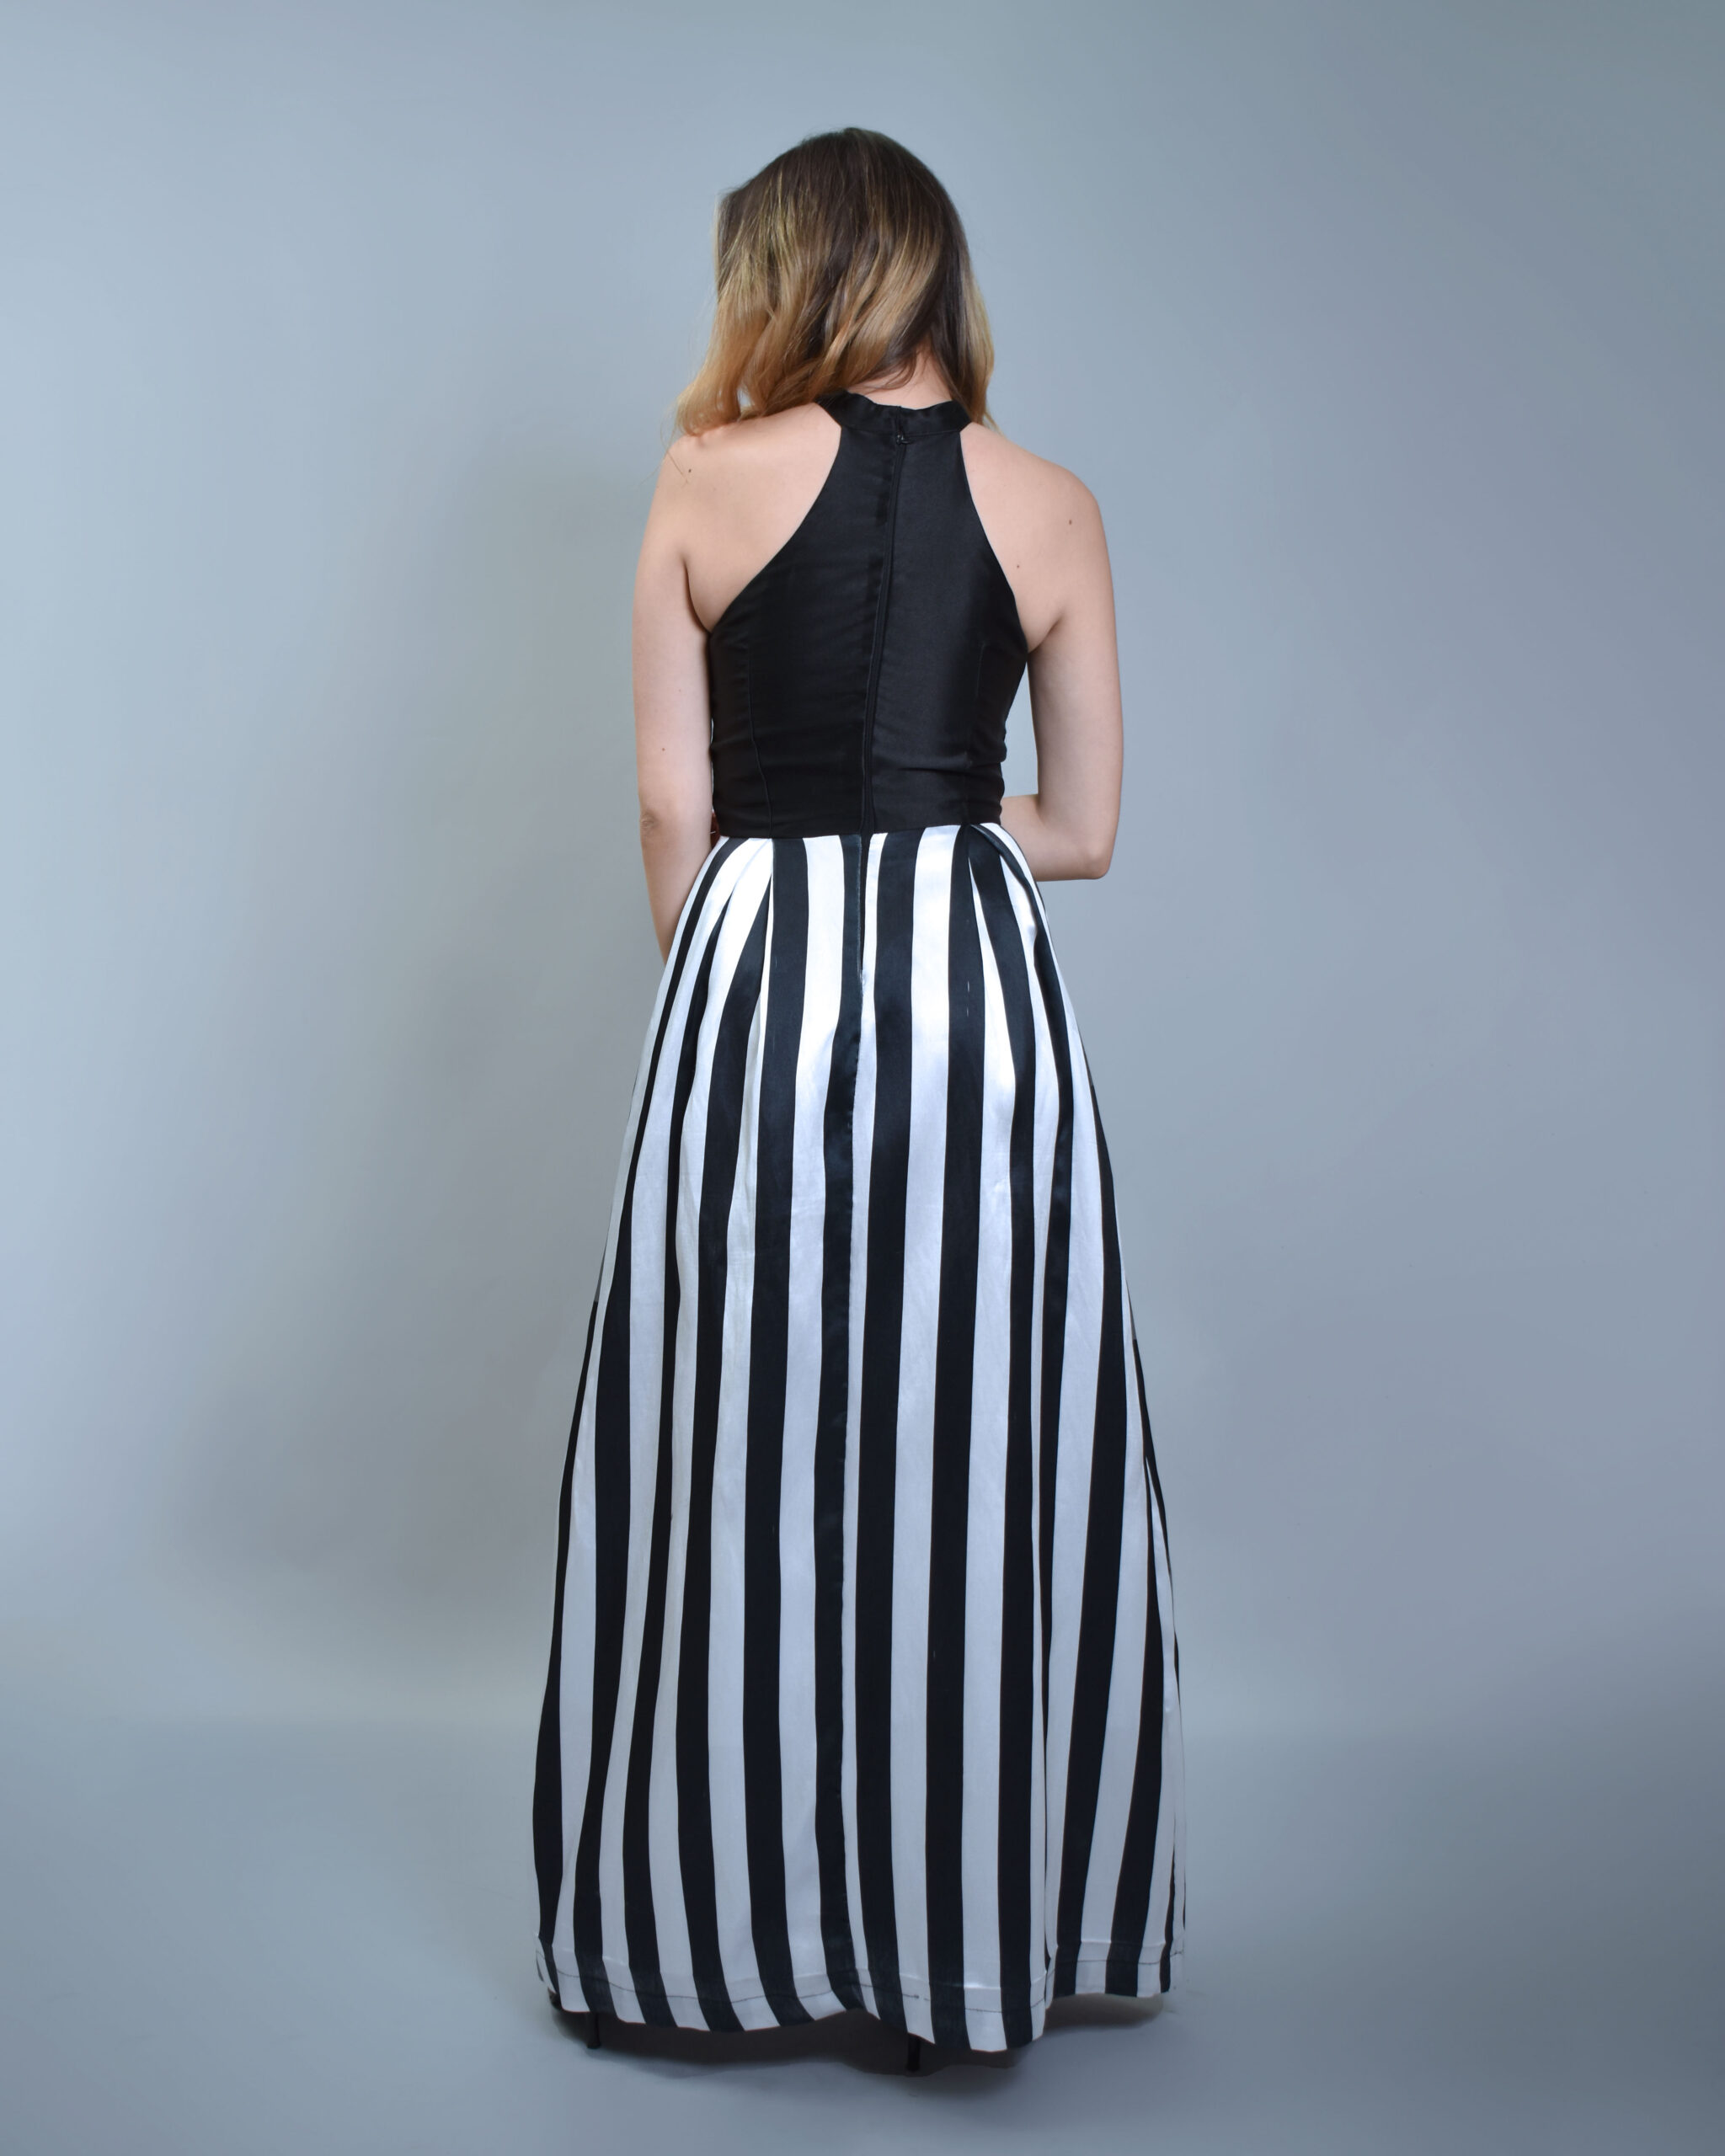 Vestido de falda con rayas verticales blancas y negras – Vestidos 251